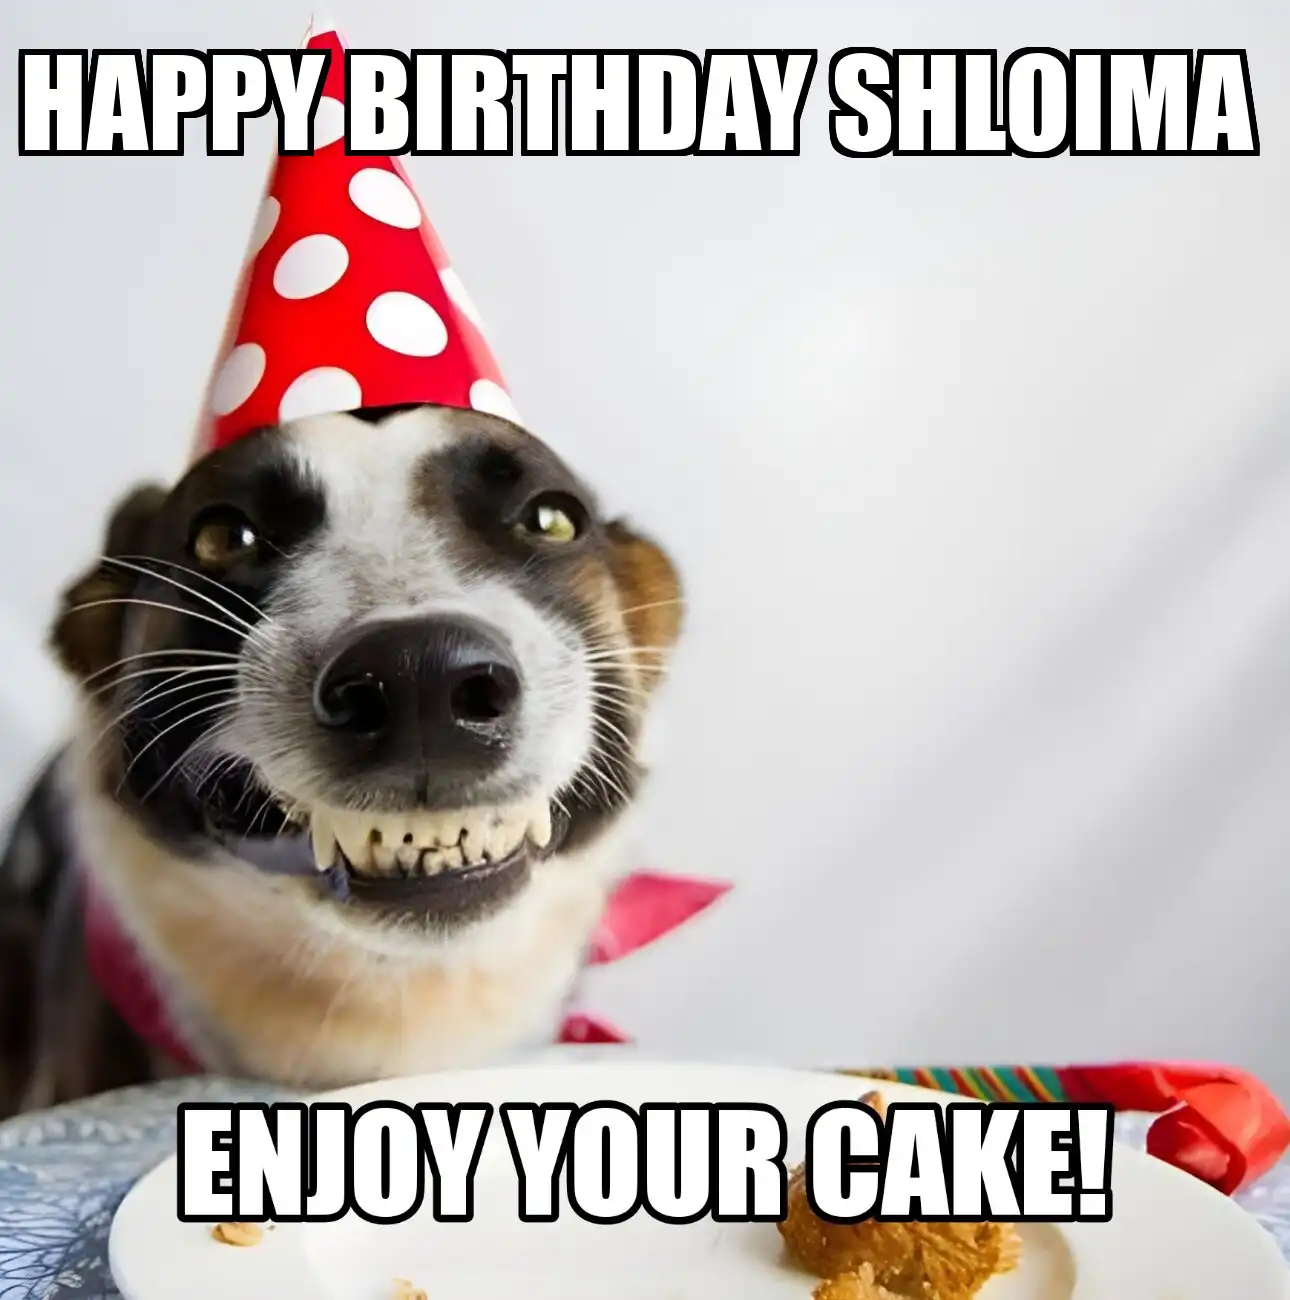 Happy Birthday Shloima Enjoy Your Cake Dog Meme